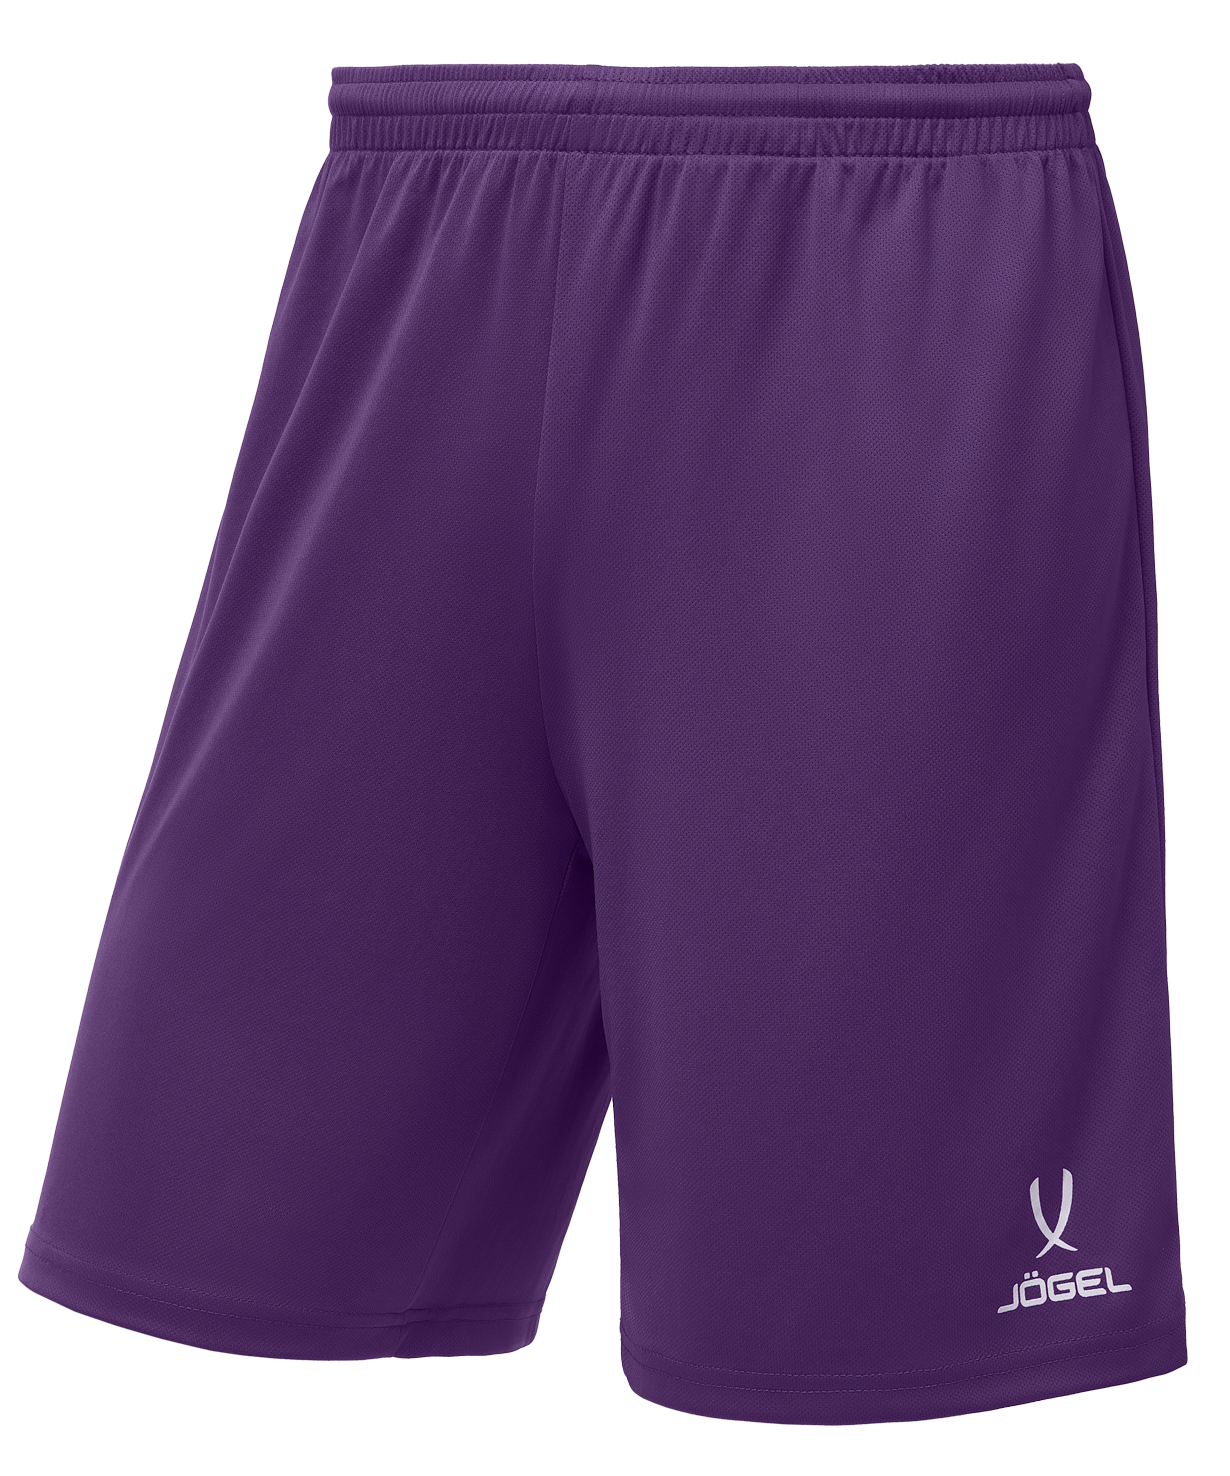 Шорты баскетбольные Jogel Camp Basic, фиолетовый, детский - YS шорты футбольные детские jogel camp jfs 1120 v1 k фиолетовый белый р 110